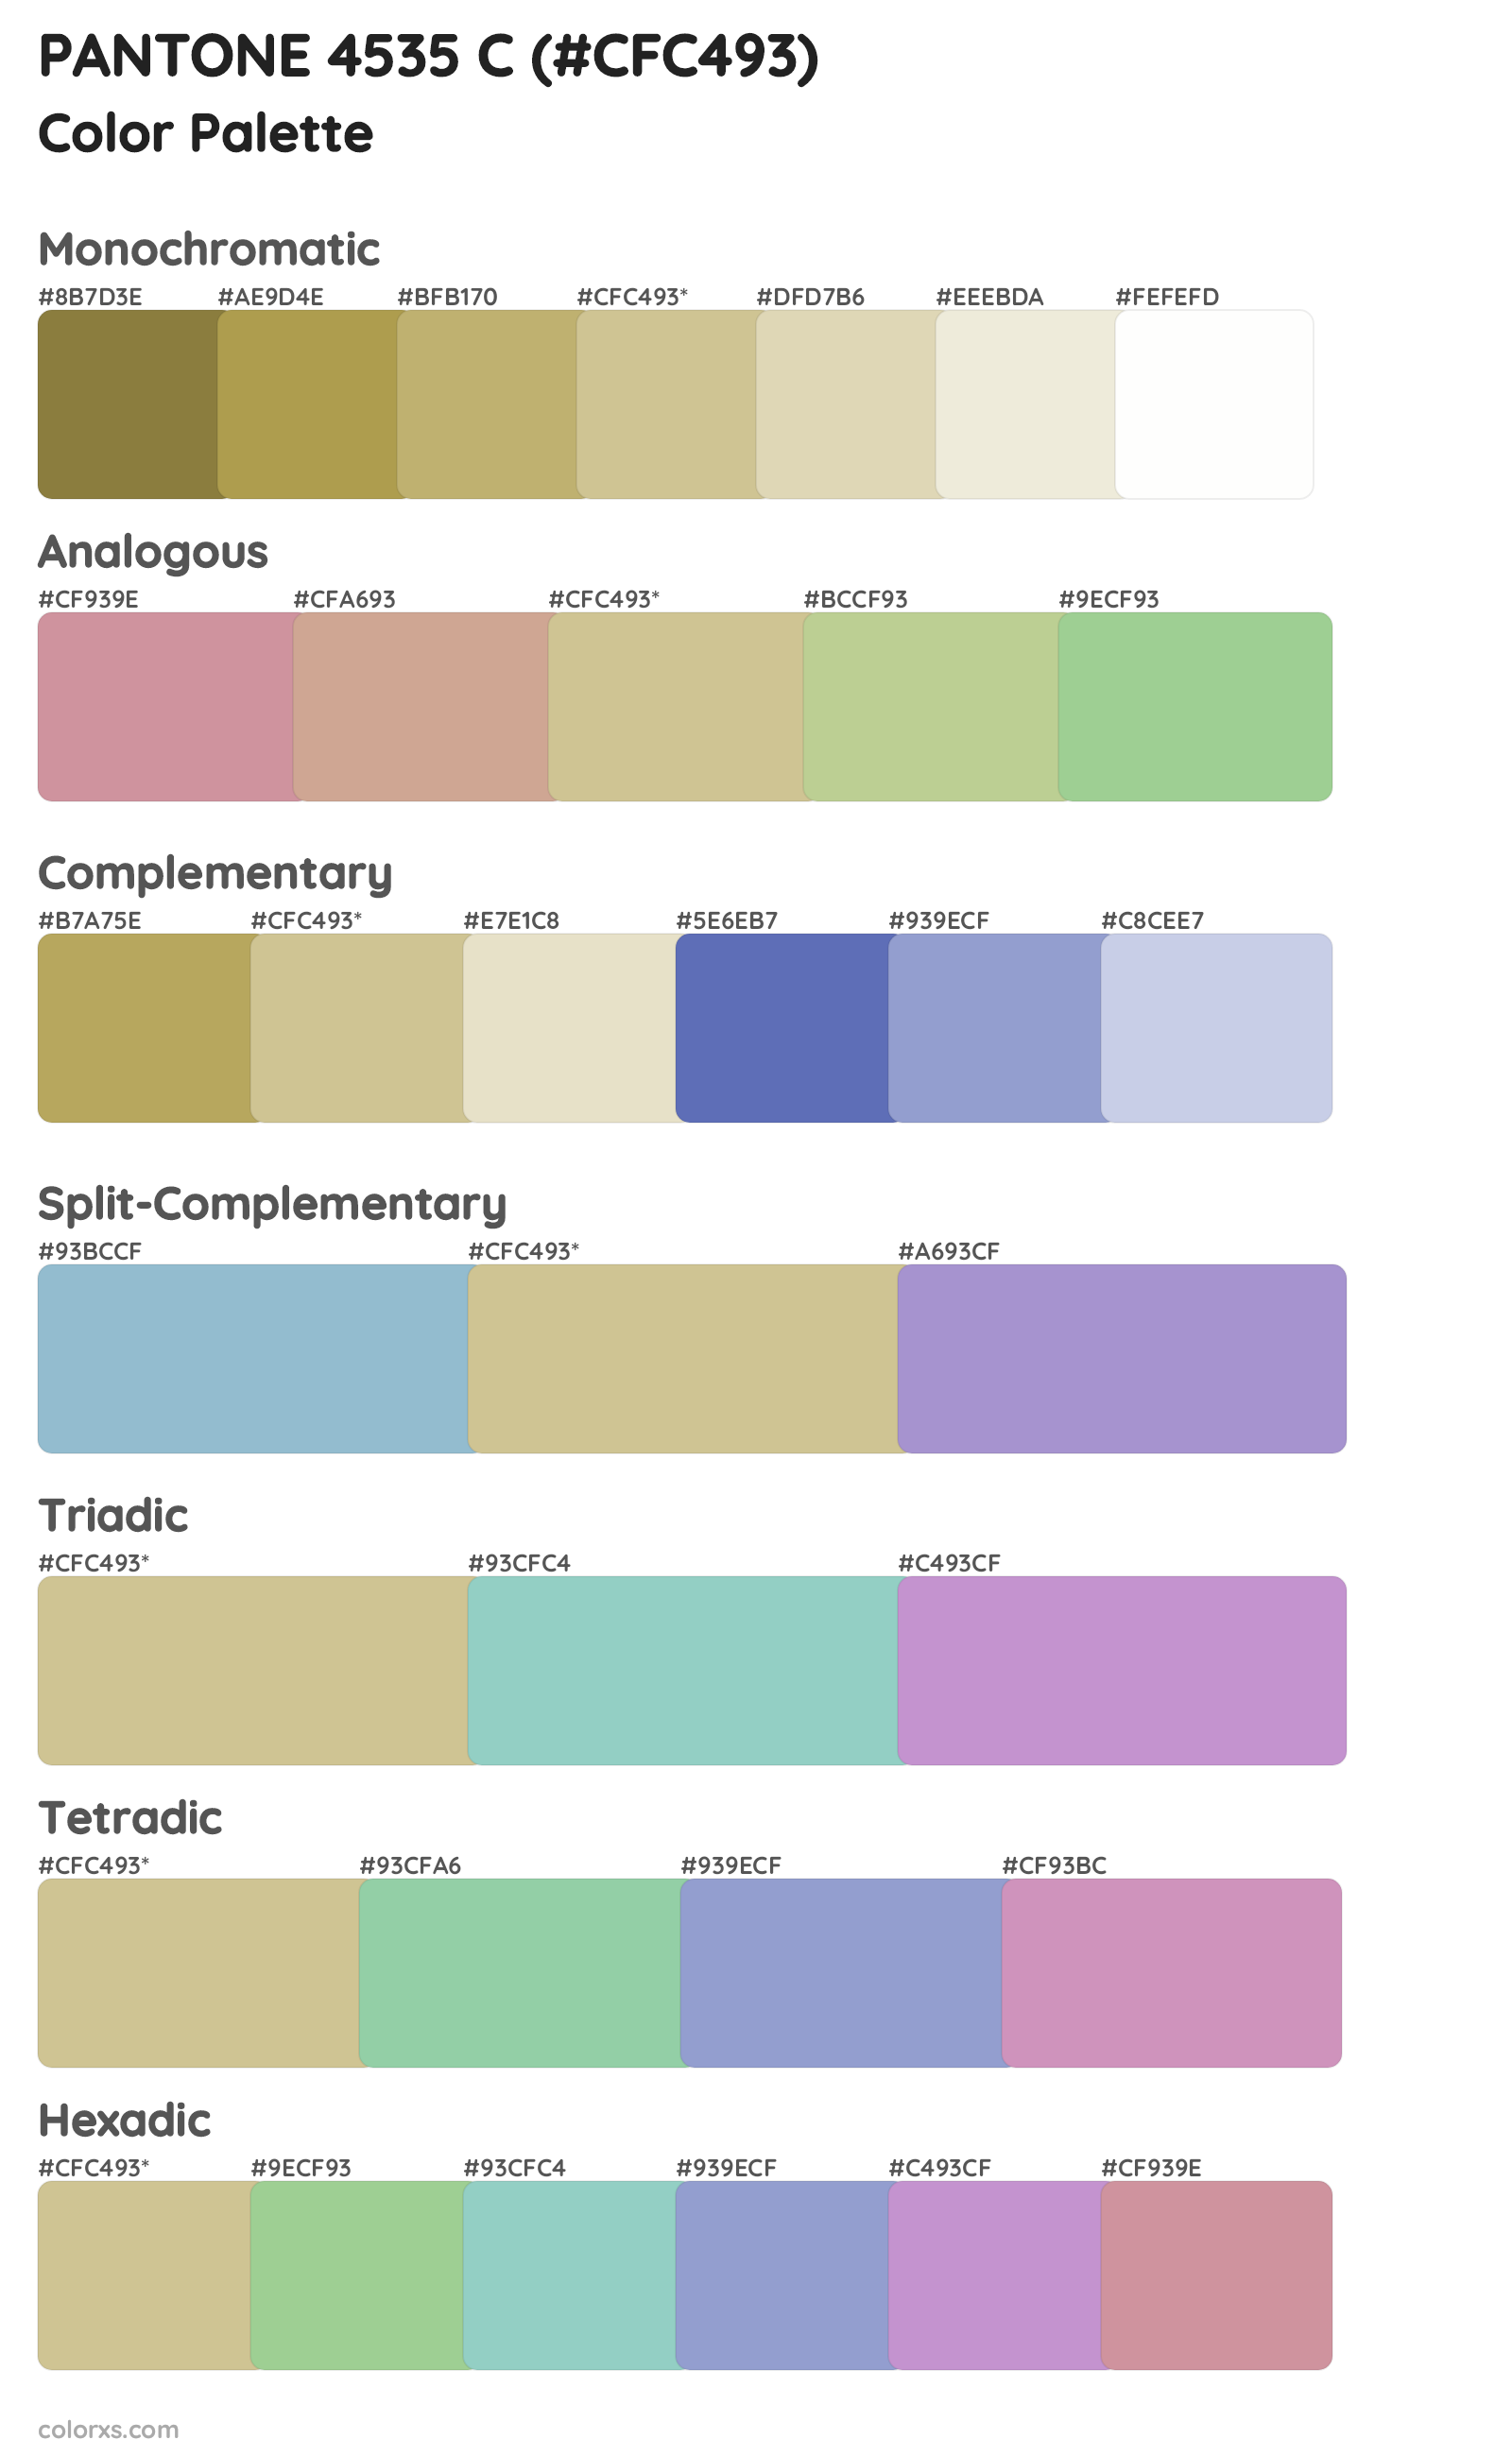 PANTONE 4535 C Color Scheme Palettes